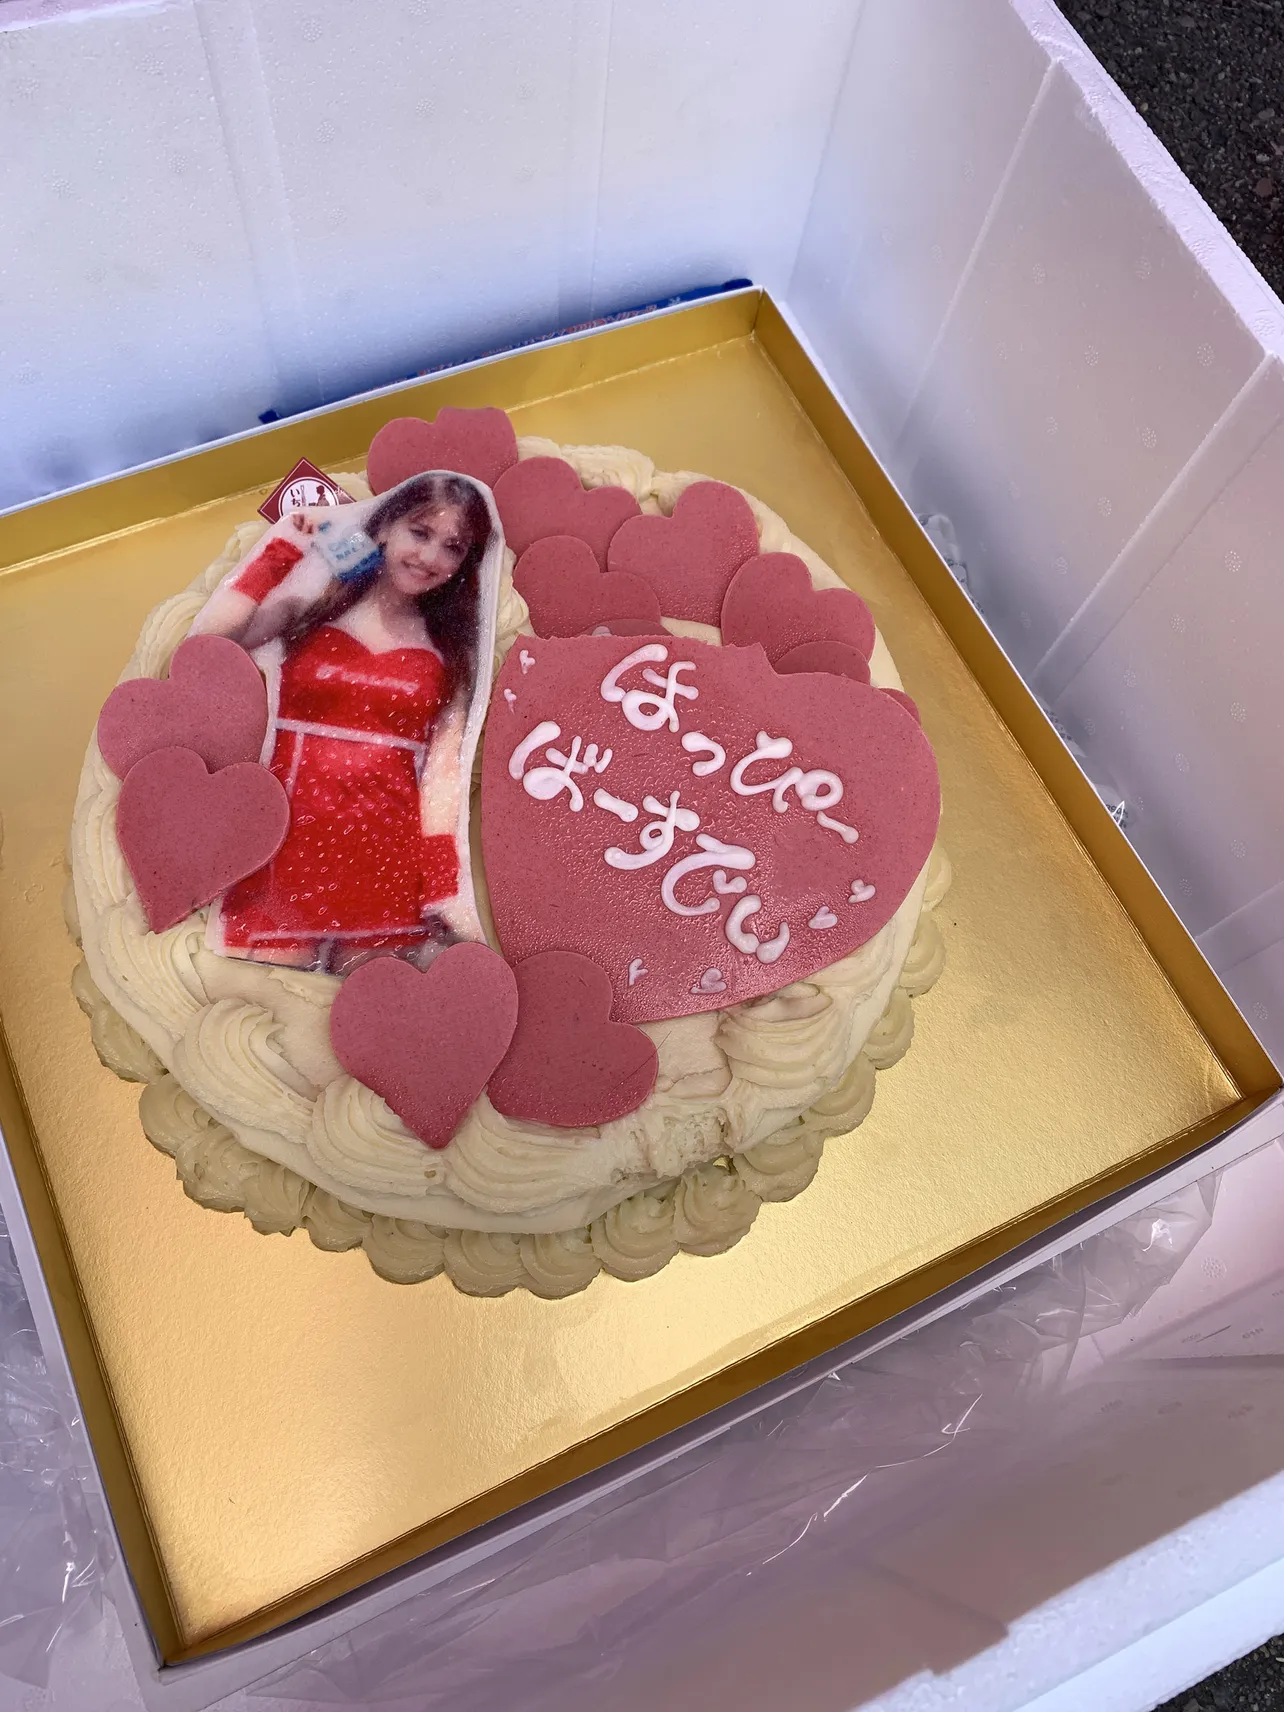  北川美麗の誕生日ケーキ